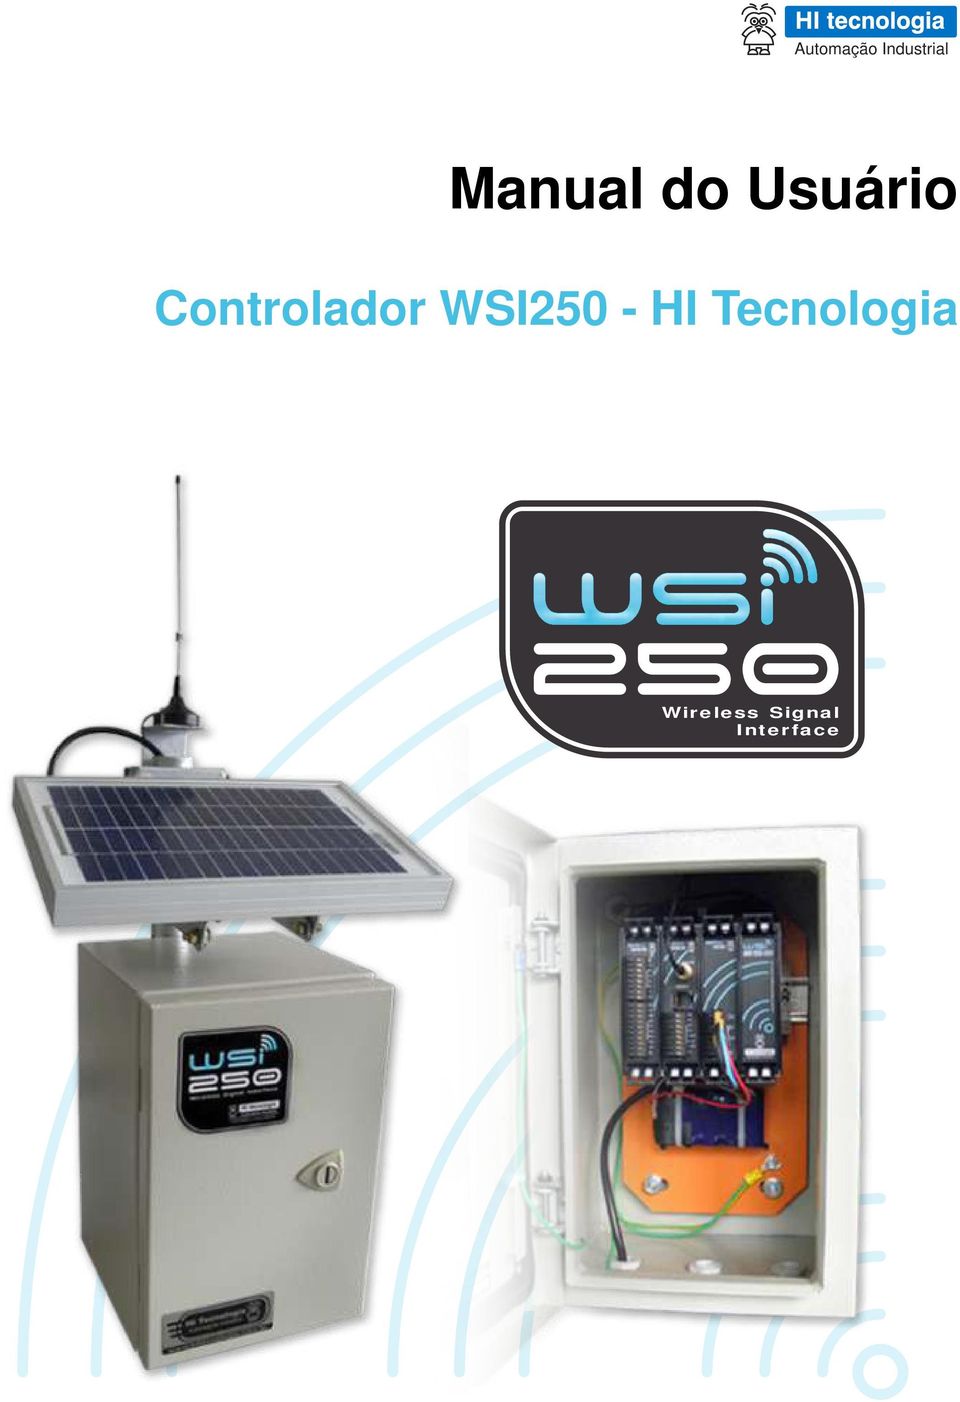 Controlador WSI250 - HI